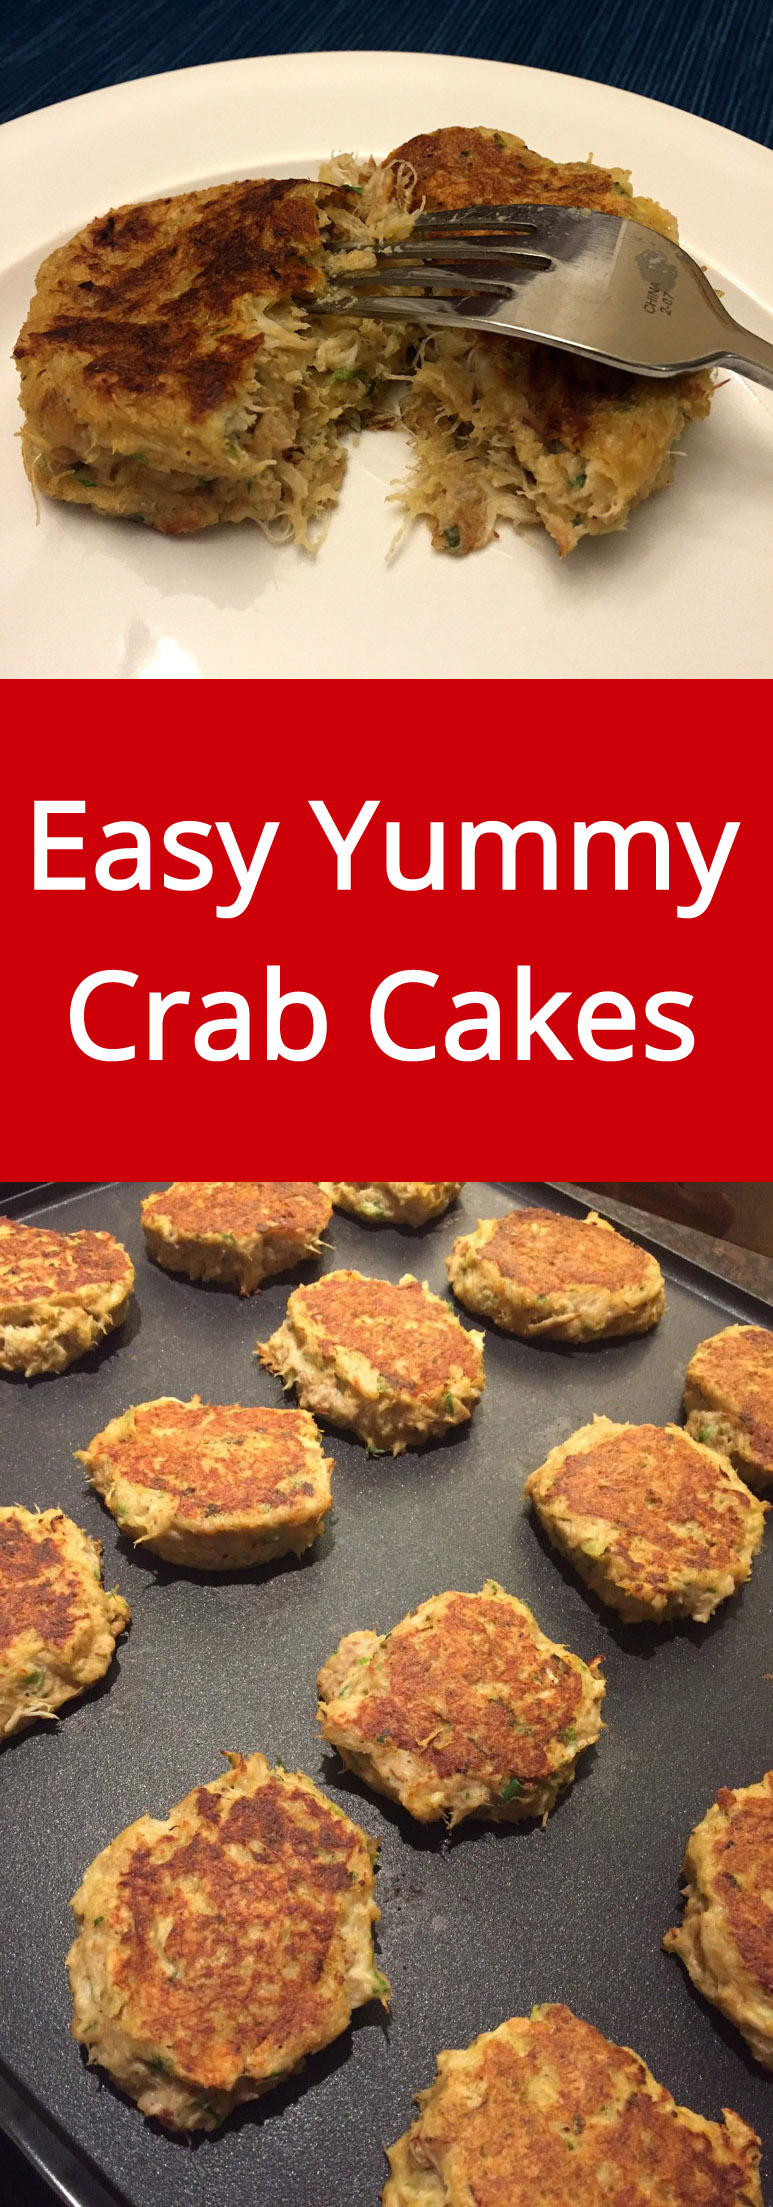 Easy Homemade Crab Cakes Recipe - so delicious, I love crab cakes! | MelanieCooks.com